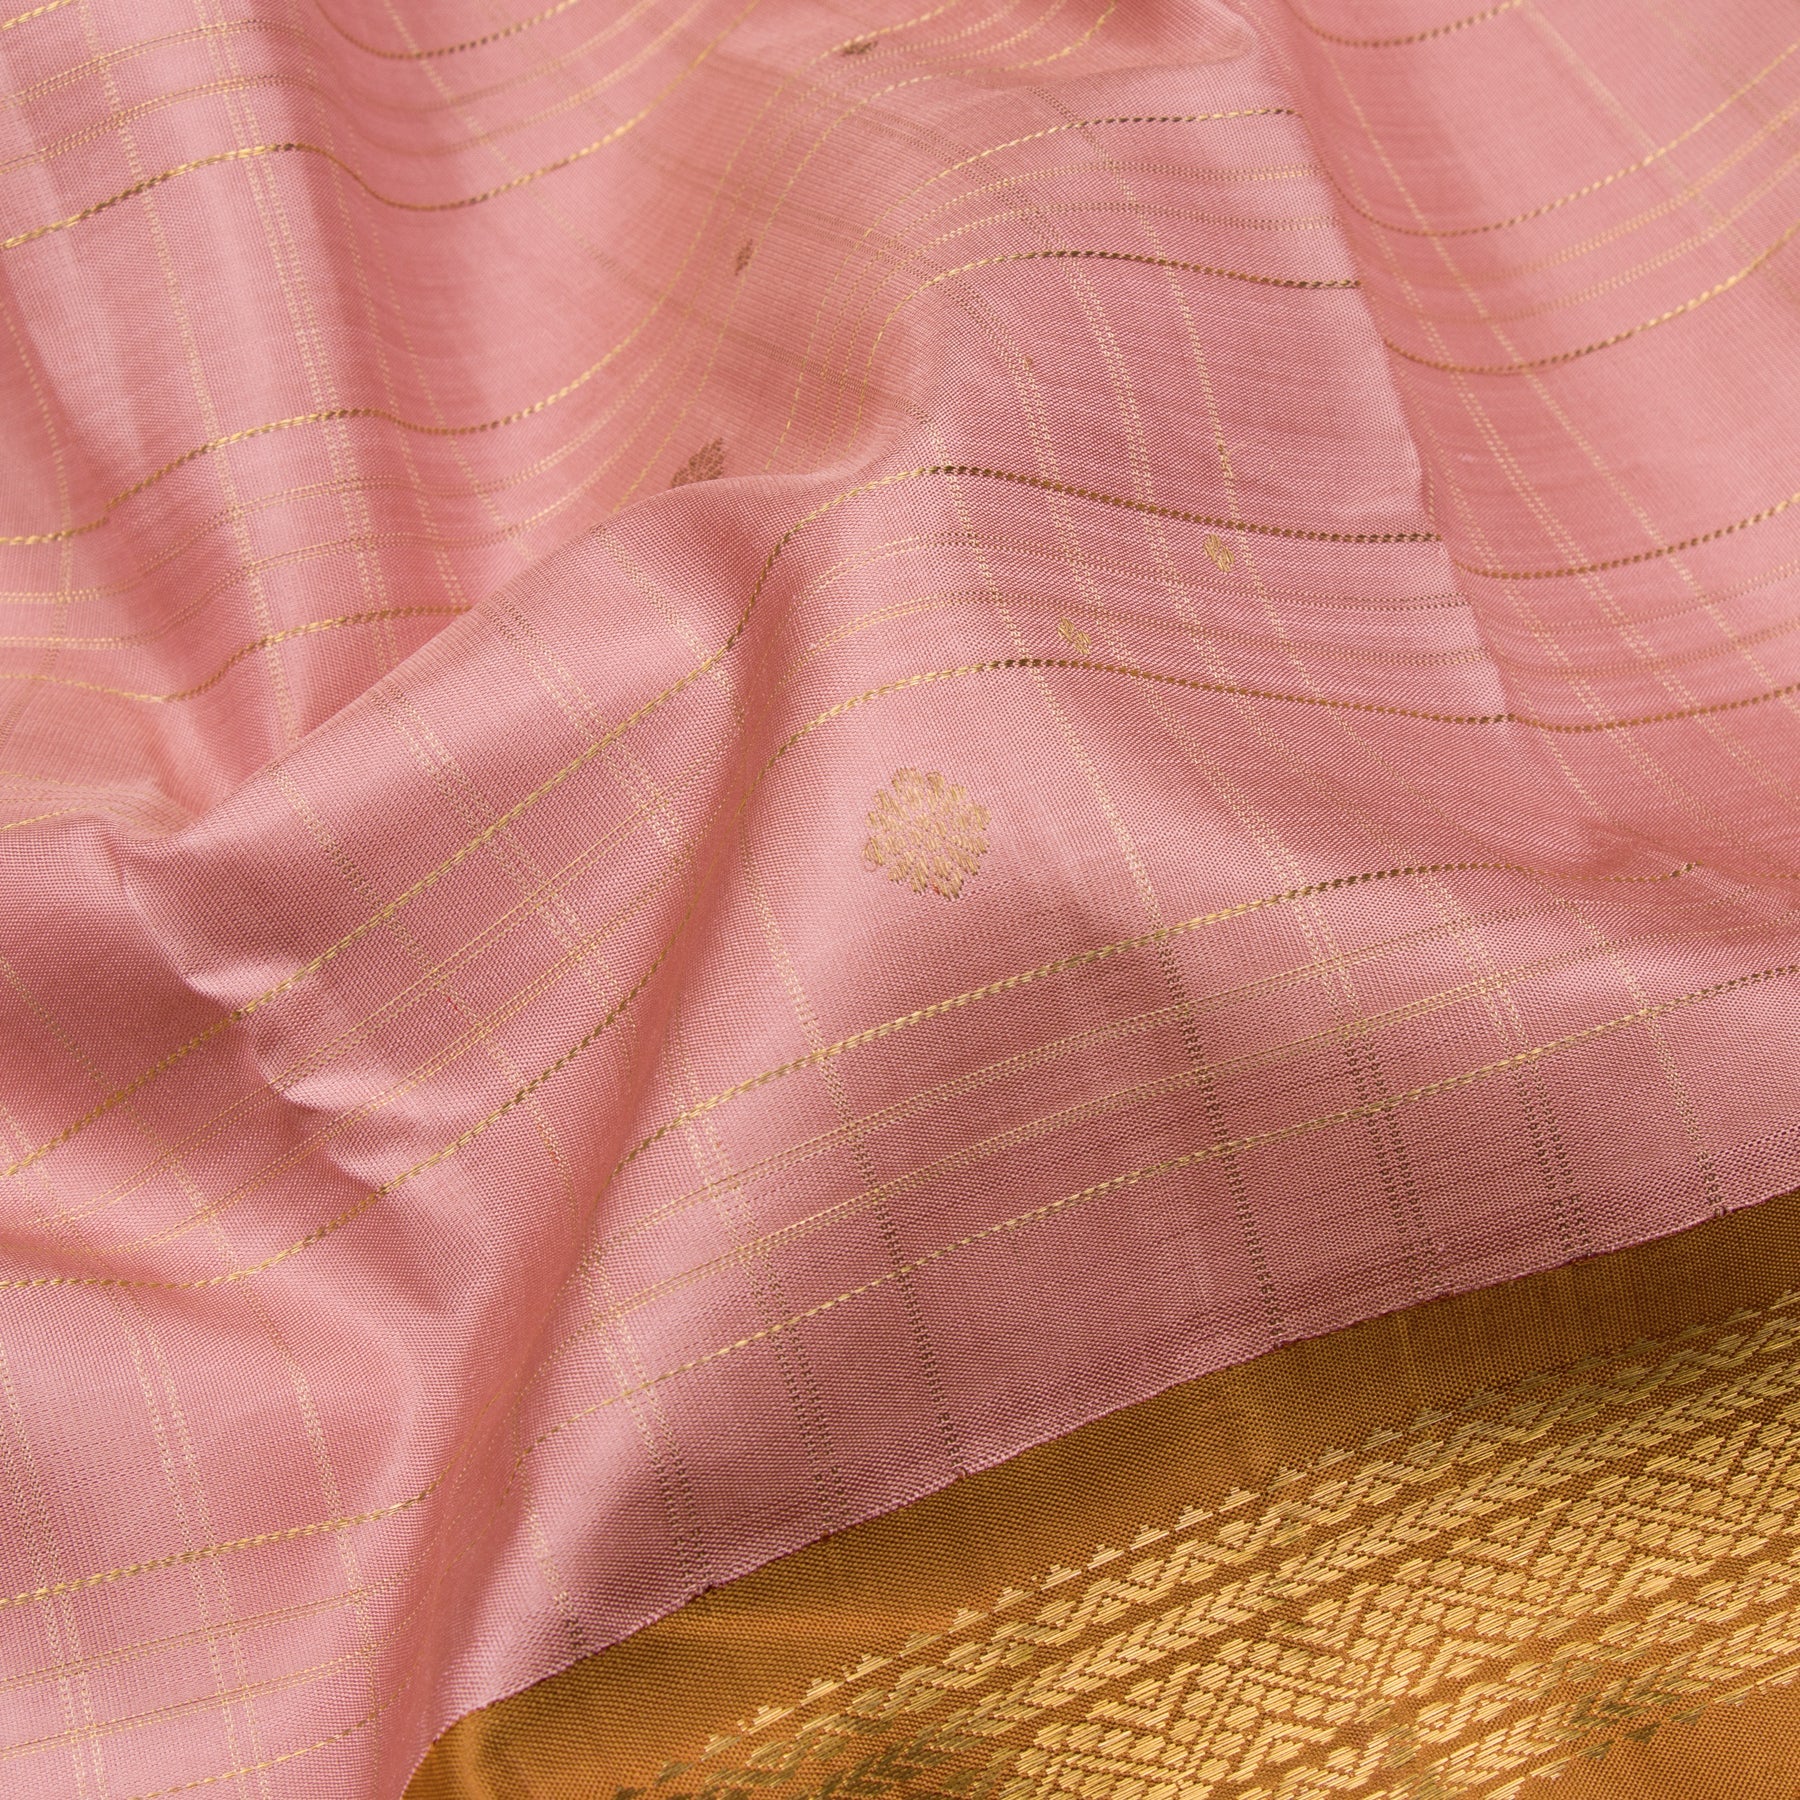 Kanakavalli Kanjivaram Silk Sari 22-595-HS001-12406 - Fabric View